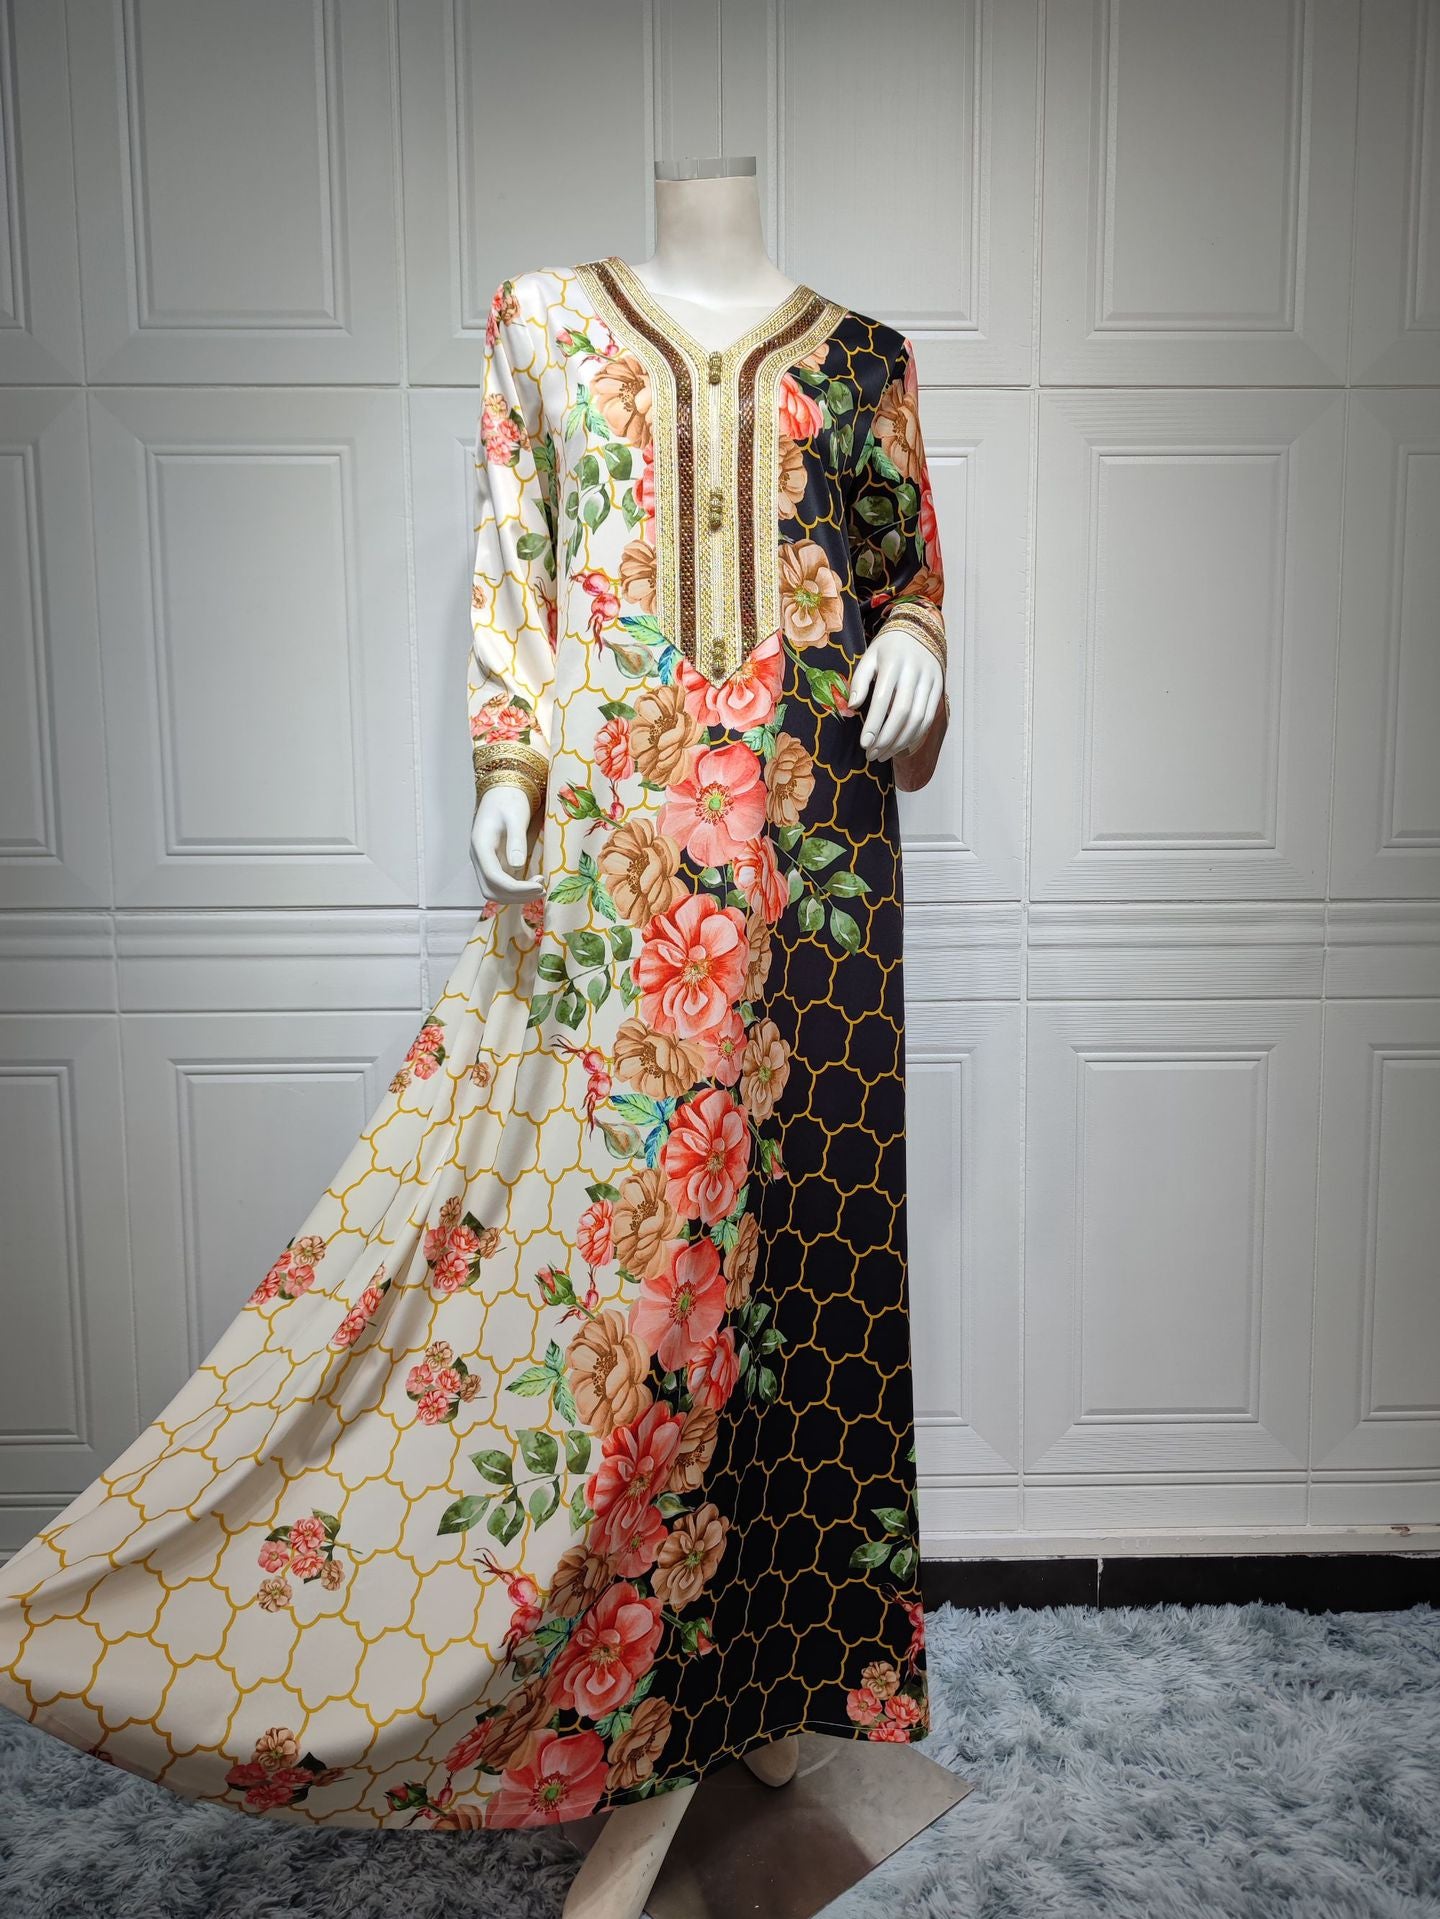 BamBam Swing Ethnic Lace Beaded Long Sleeve Loose abaya Positioning Print Muslim Dress - BamBam